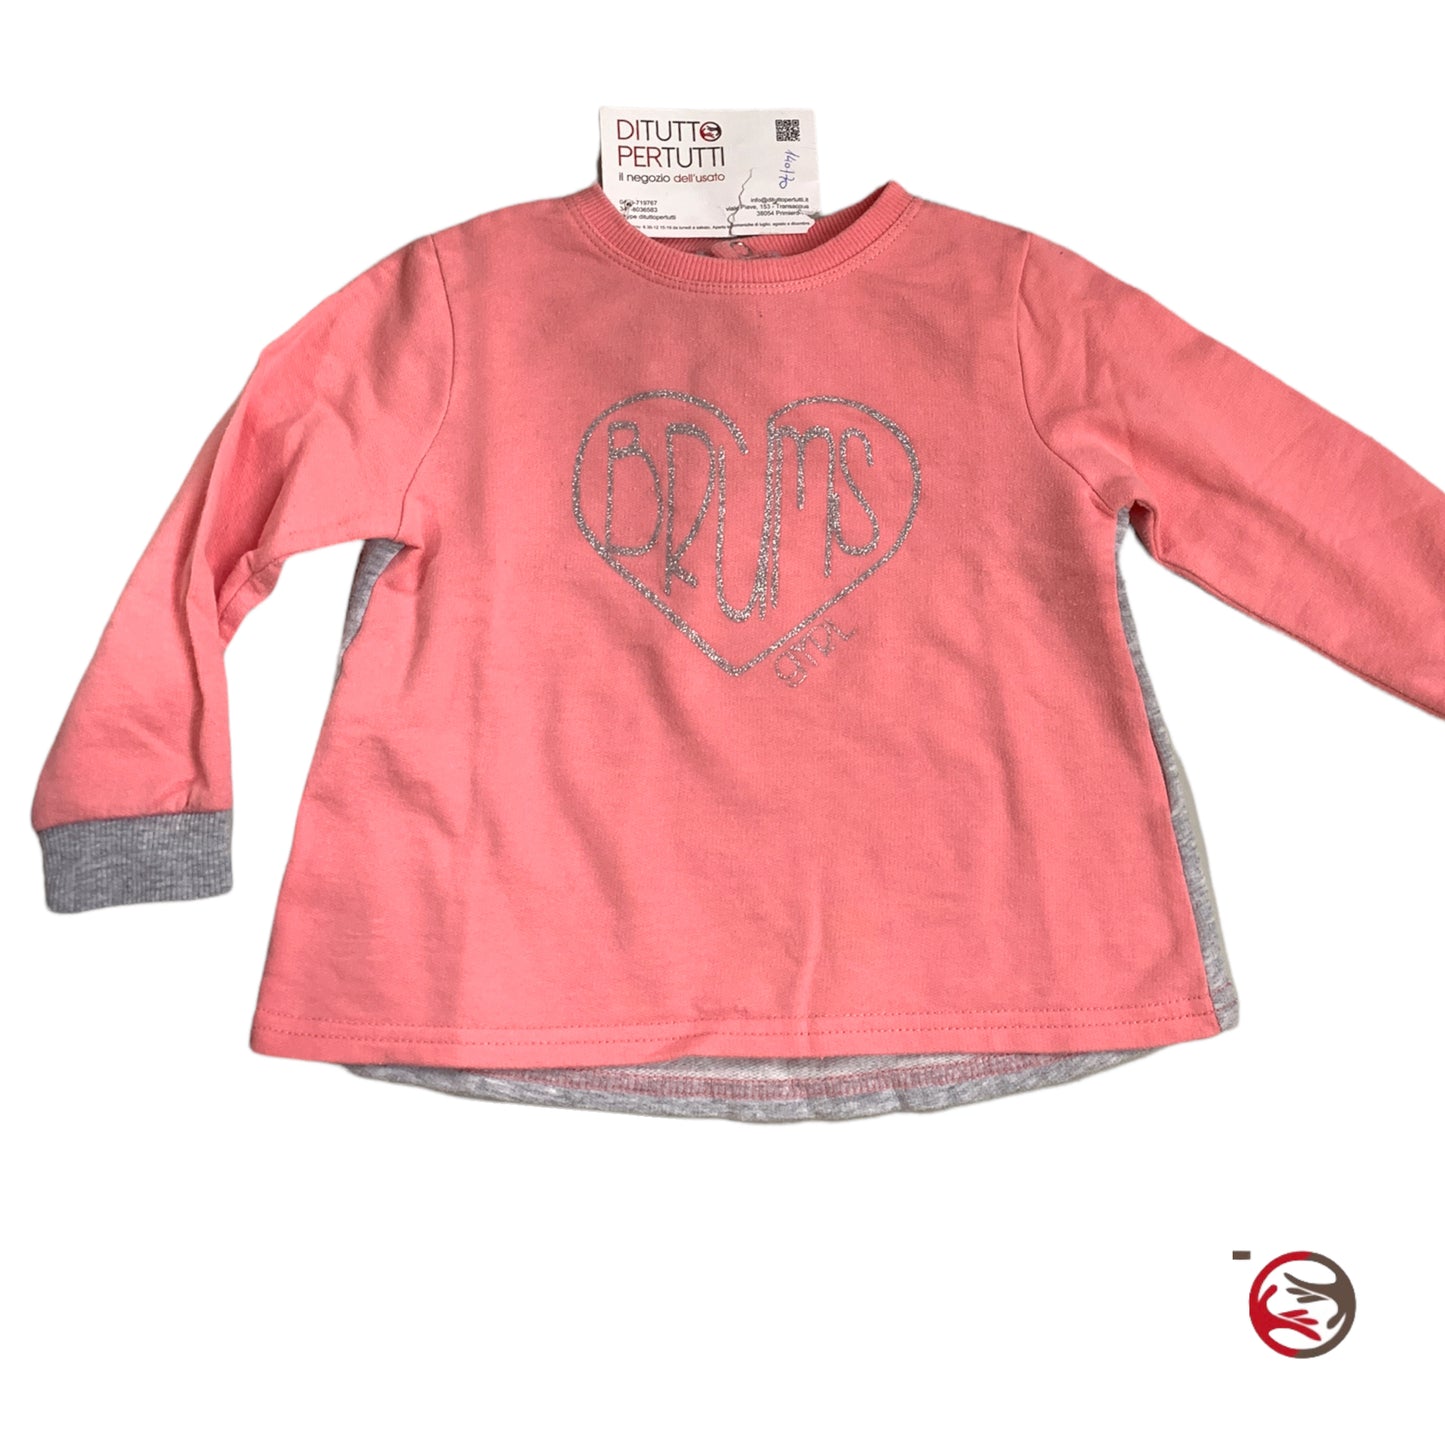 Brums rosa Sweatshirt für Mädchen 18 Monate